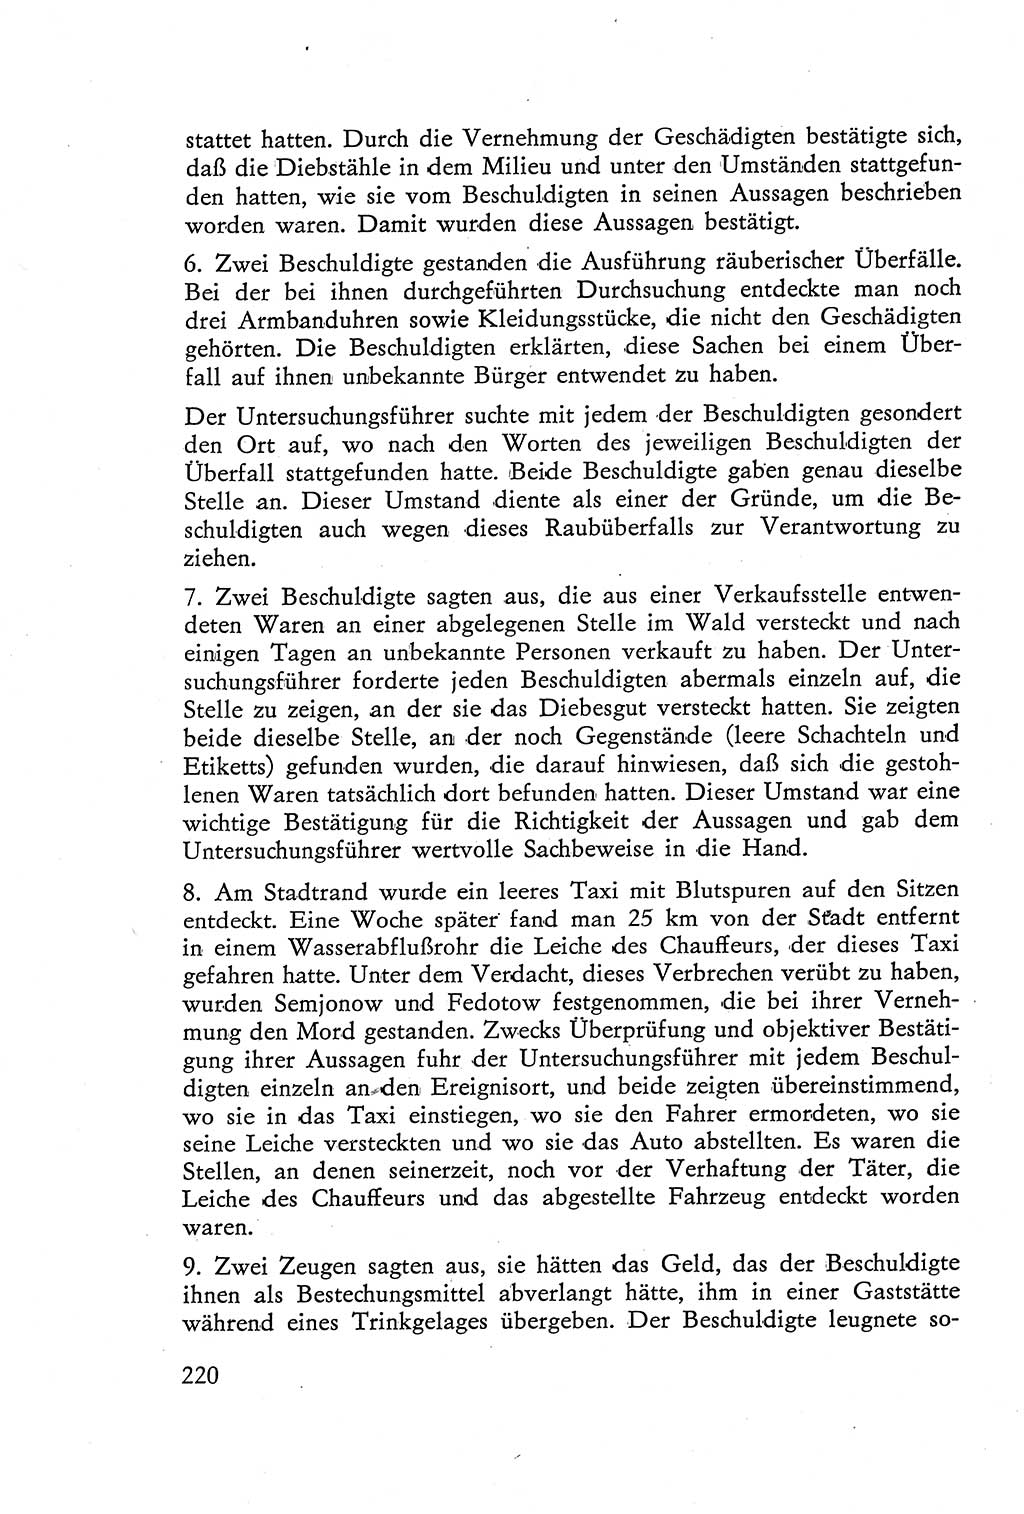 Die Vernehmung [Deutsche Demokratische Republik (DDR)] 1960, Seite 220 (Vern. DDR 1960, S. 220)